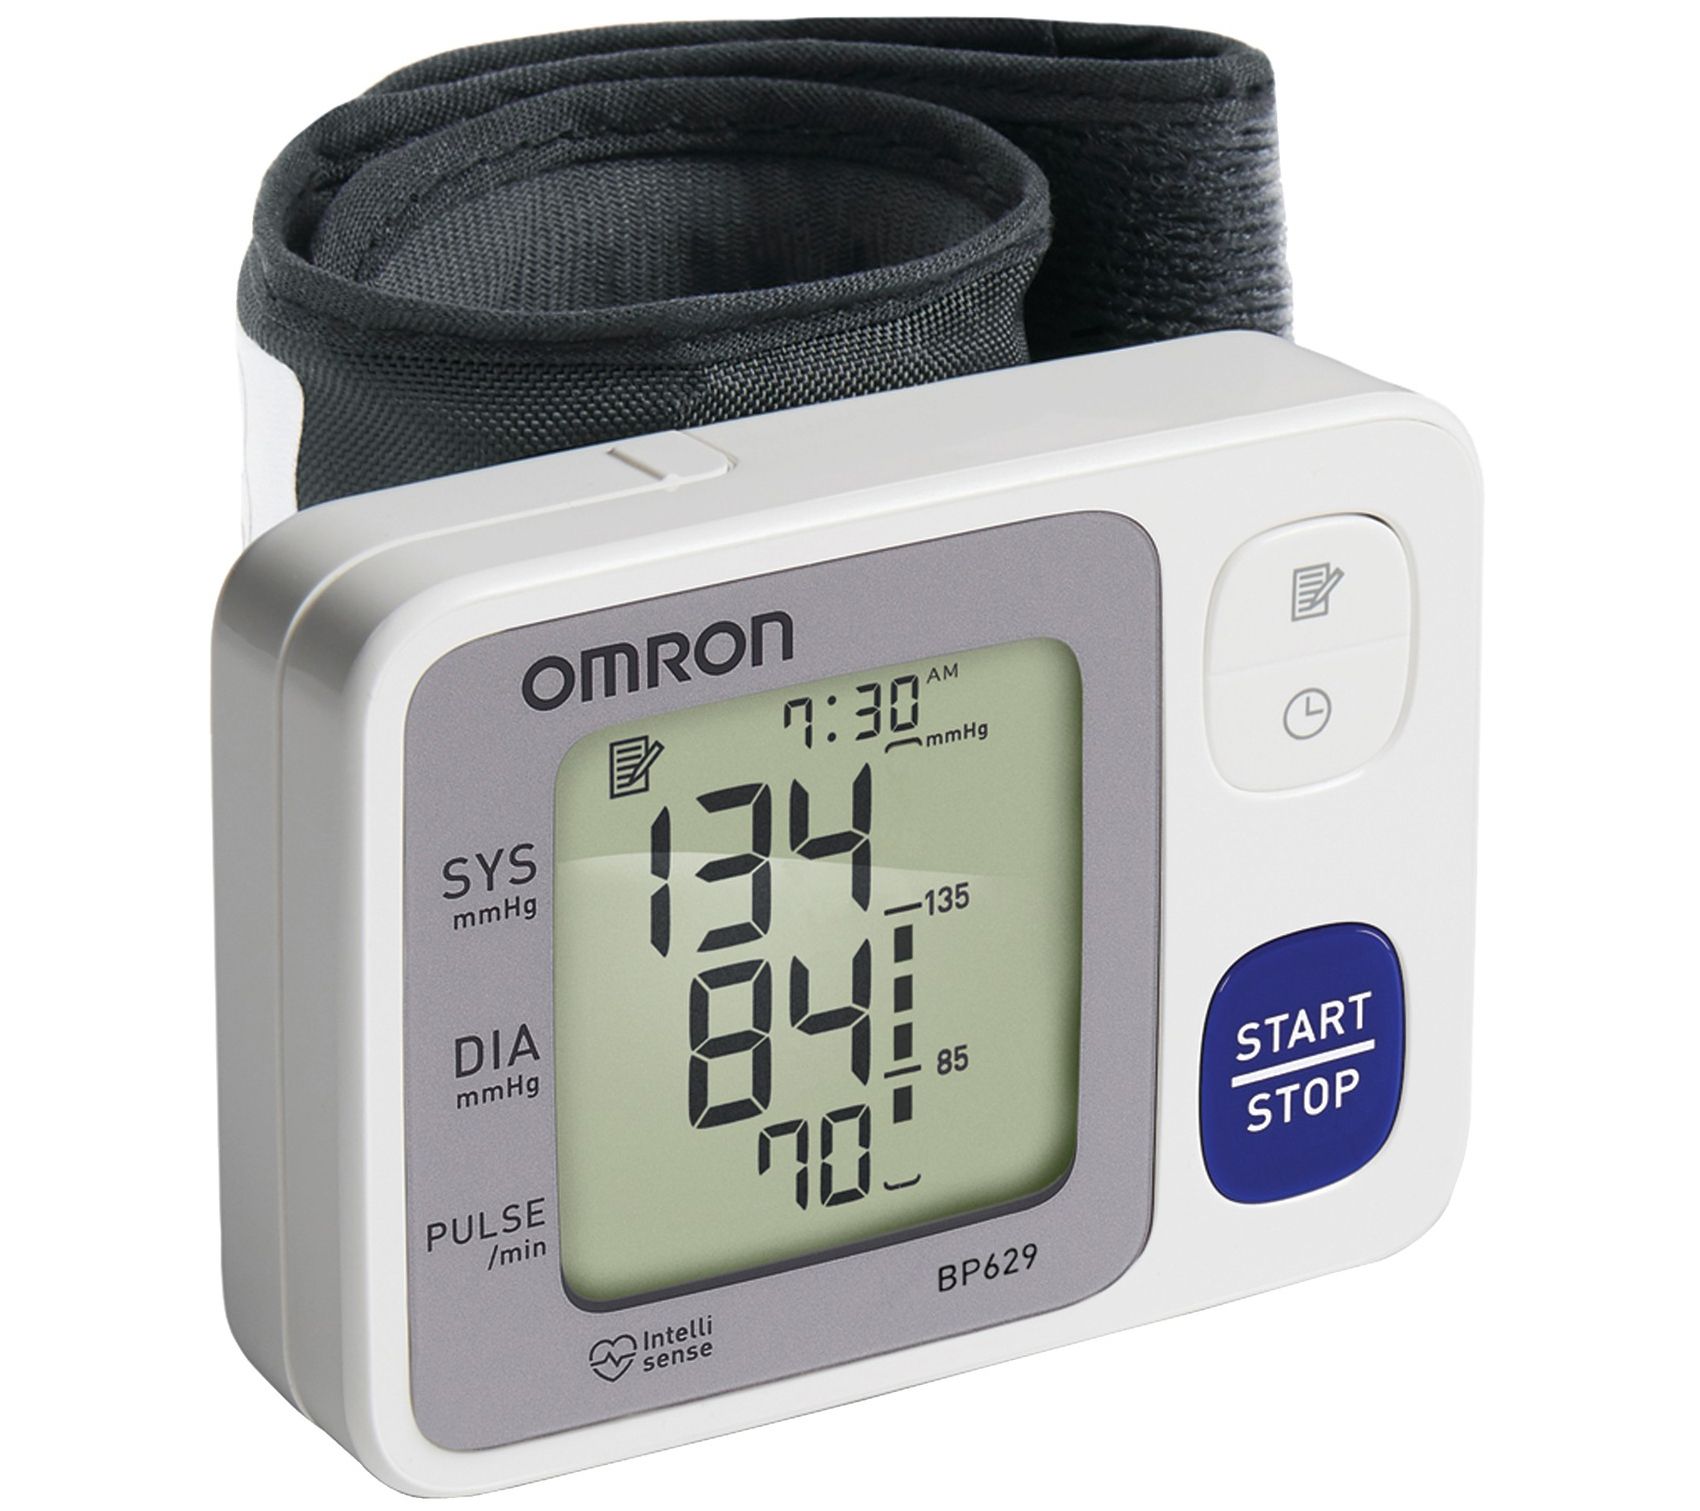 wrist blood pressure watch